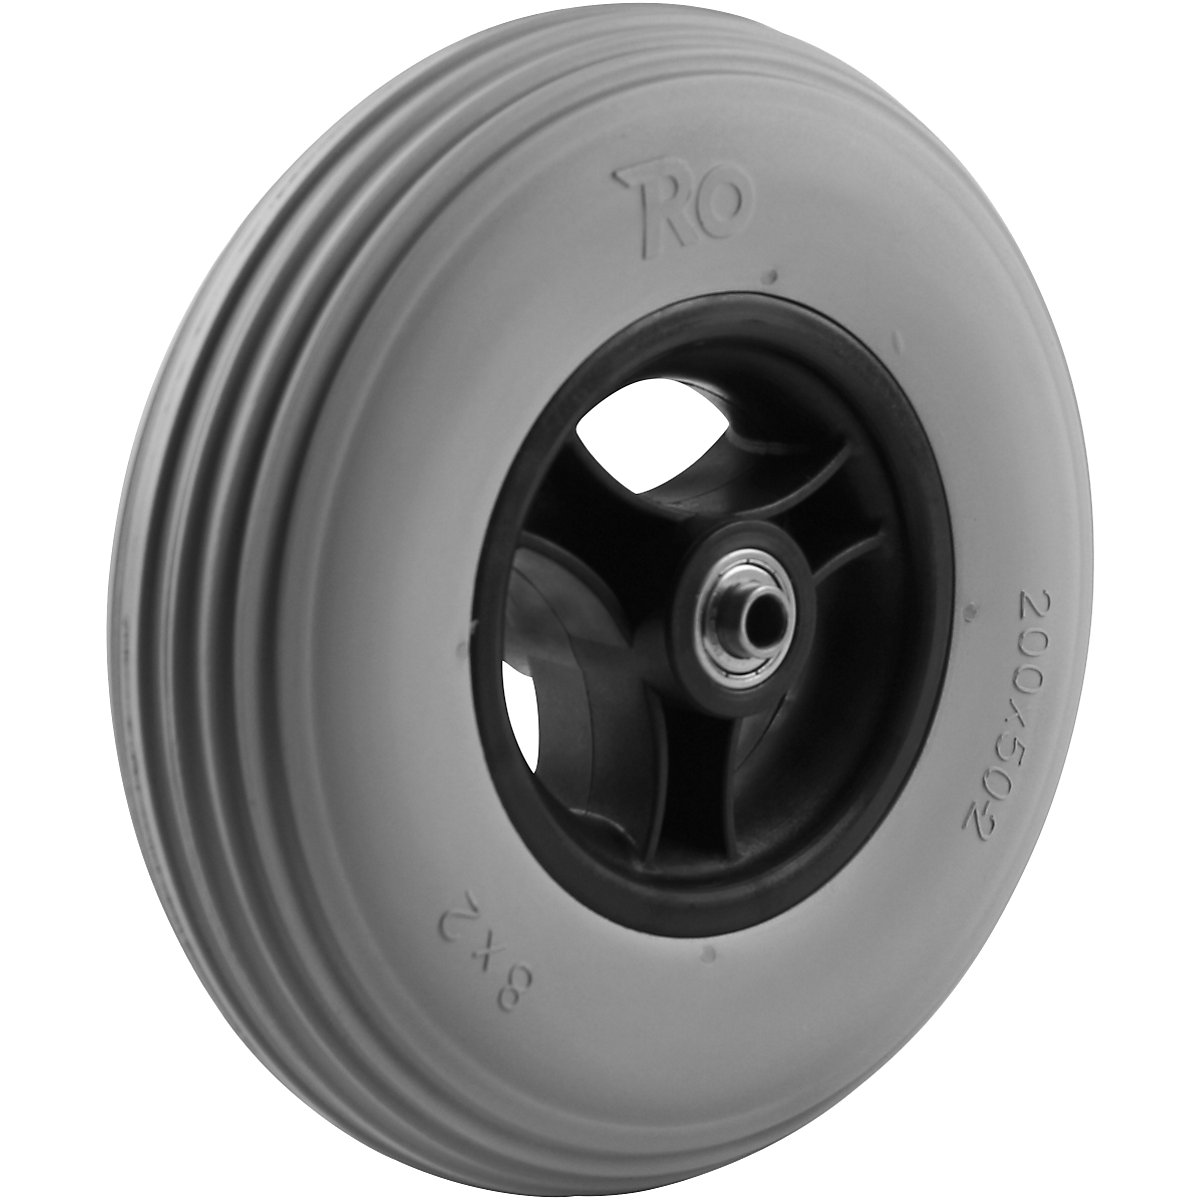 Roda com raios, com pneus de PU, não deixam marcas, Ø da roda x largura 200 x 50 mm, a partir de 4 unid.-4